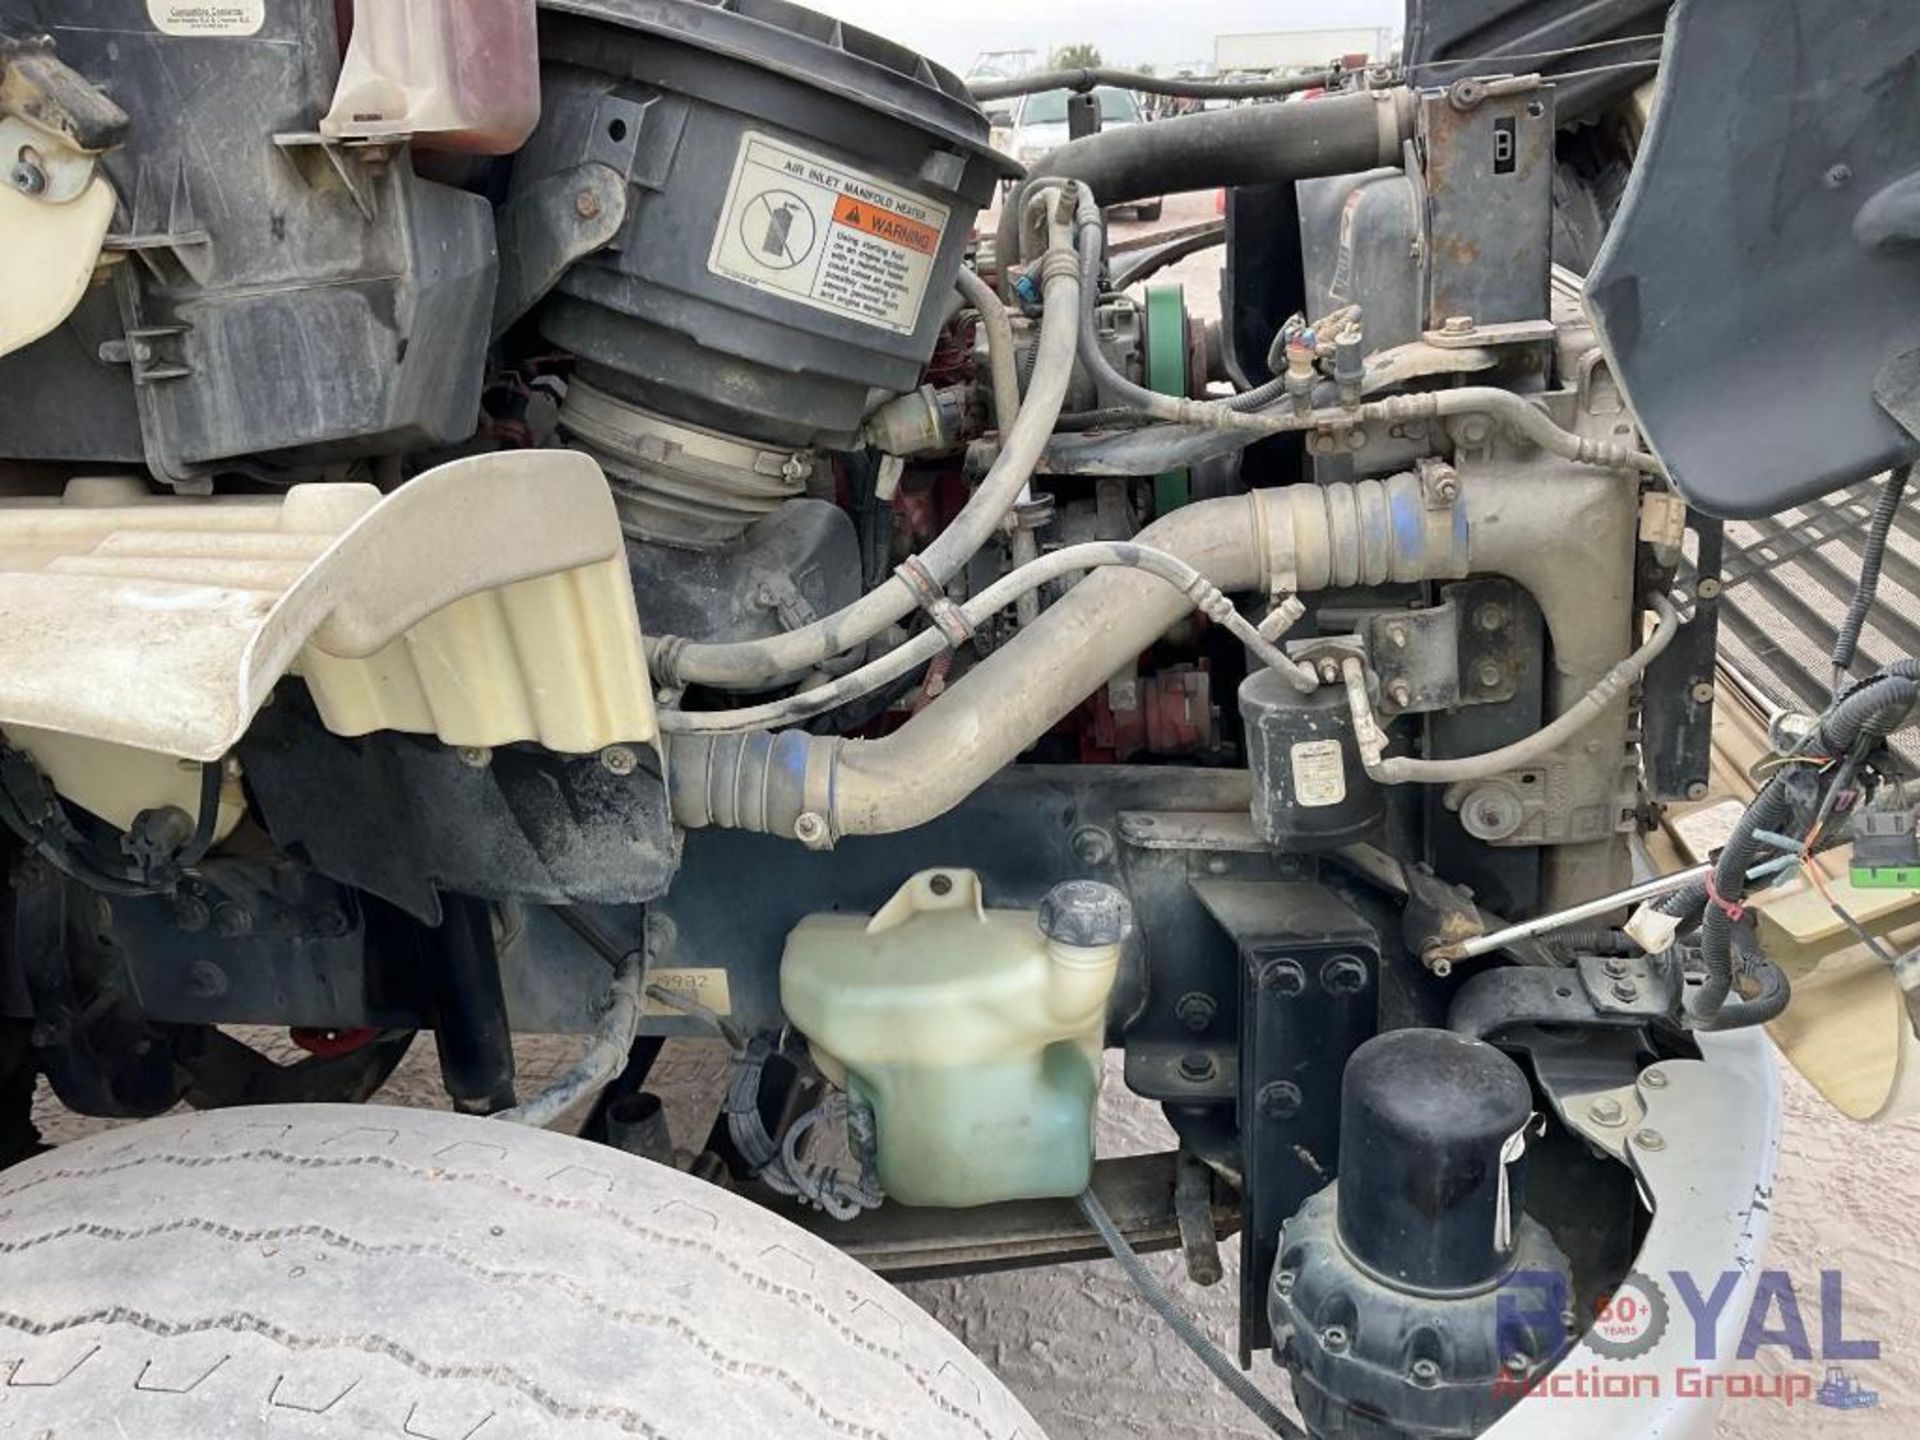 2014 Freightliner M2 106 Side Loader Garbage Truck - Image 9 of 36